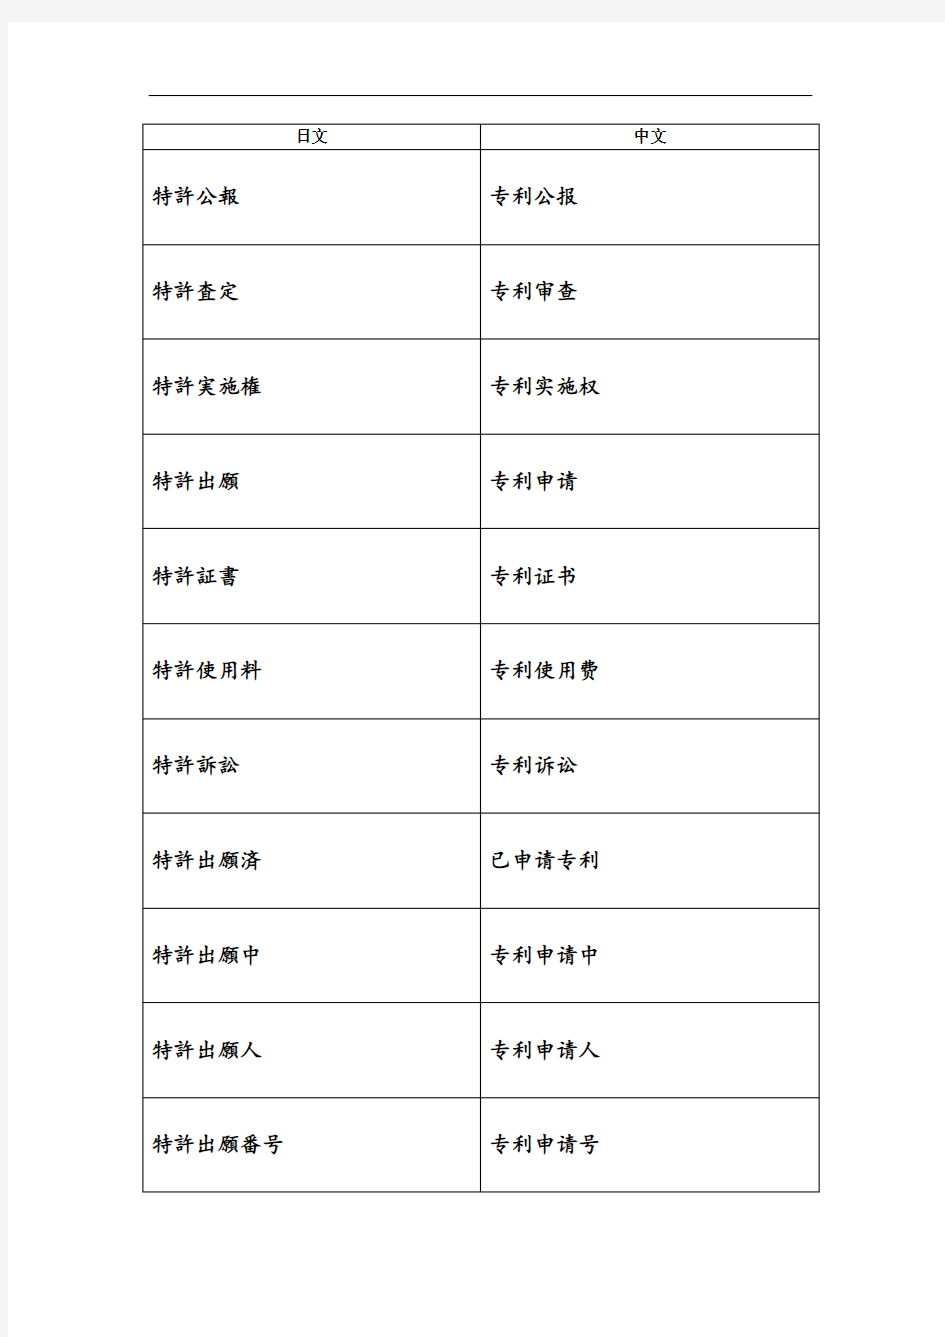 日文中文专利词汇对照